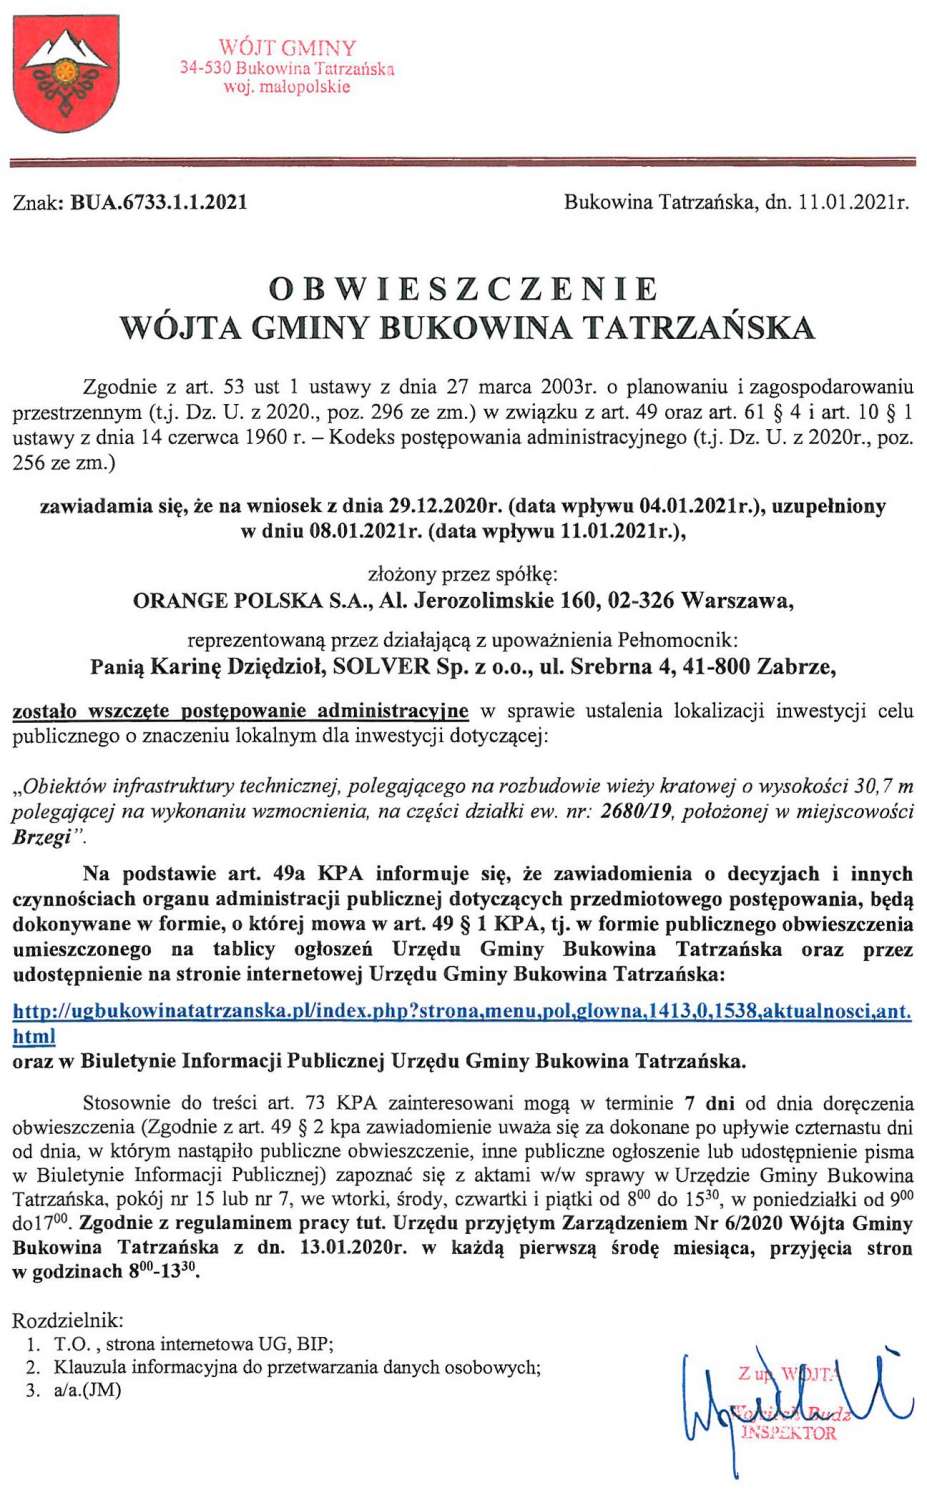 Obwieszczenie Wójta Gminy Bukowina Tatrzańska BUA 6733.1.1.2021